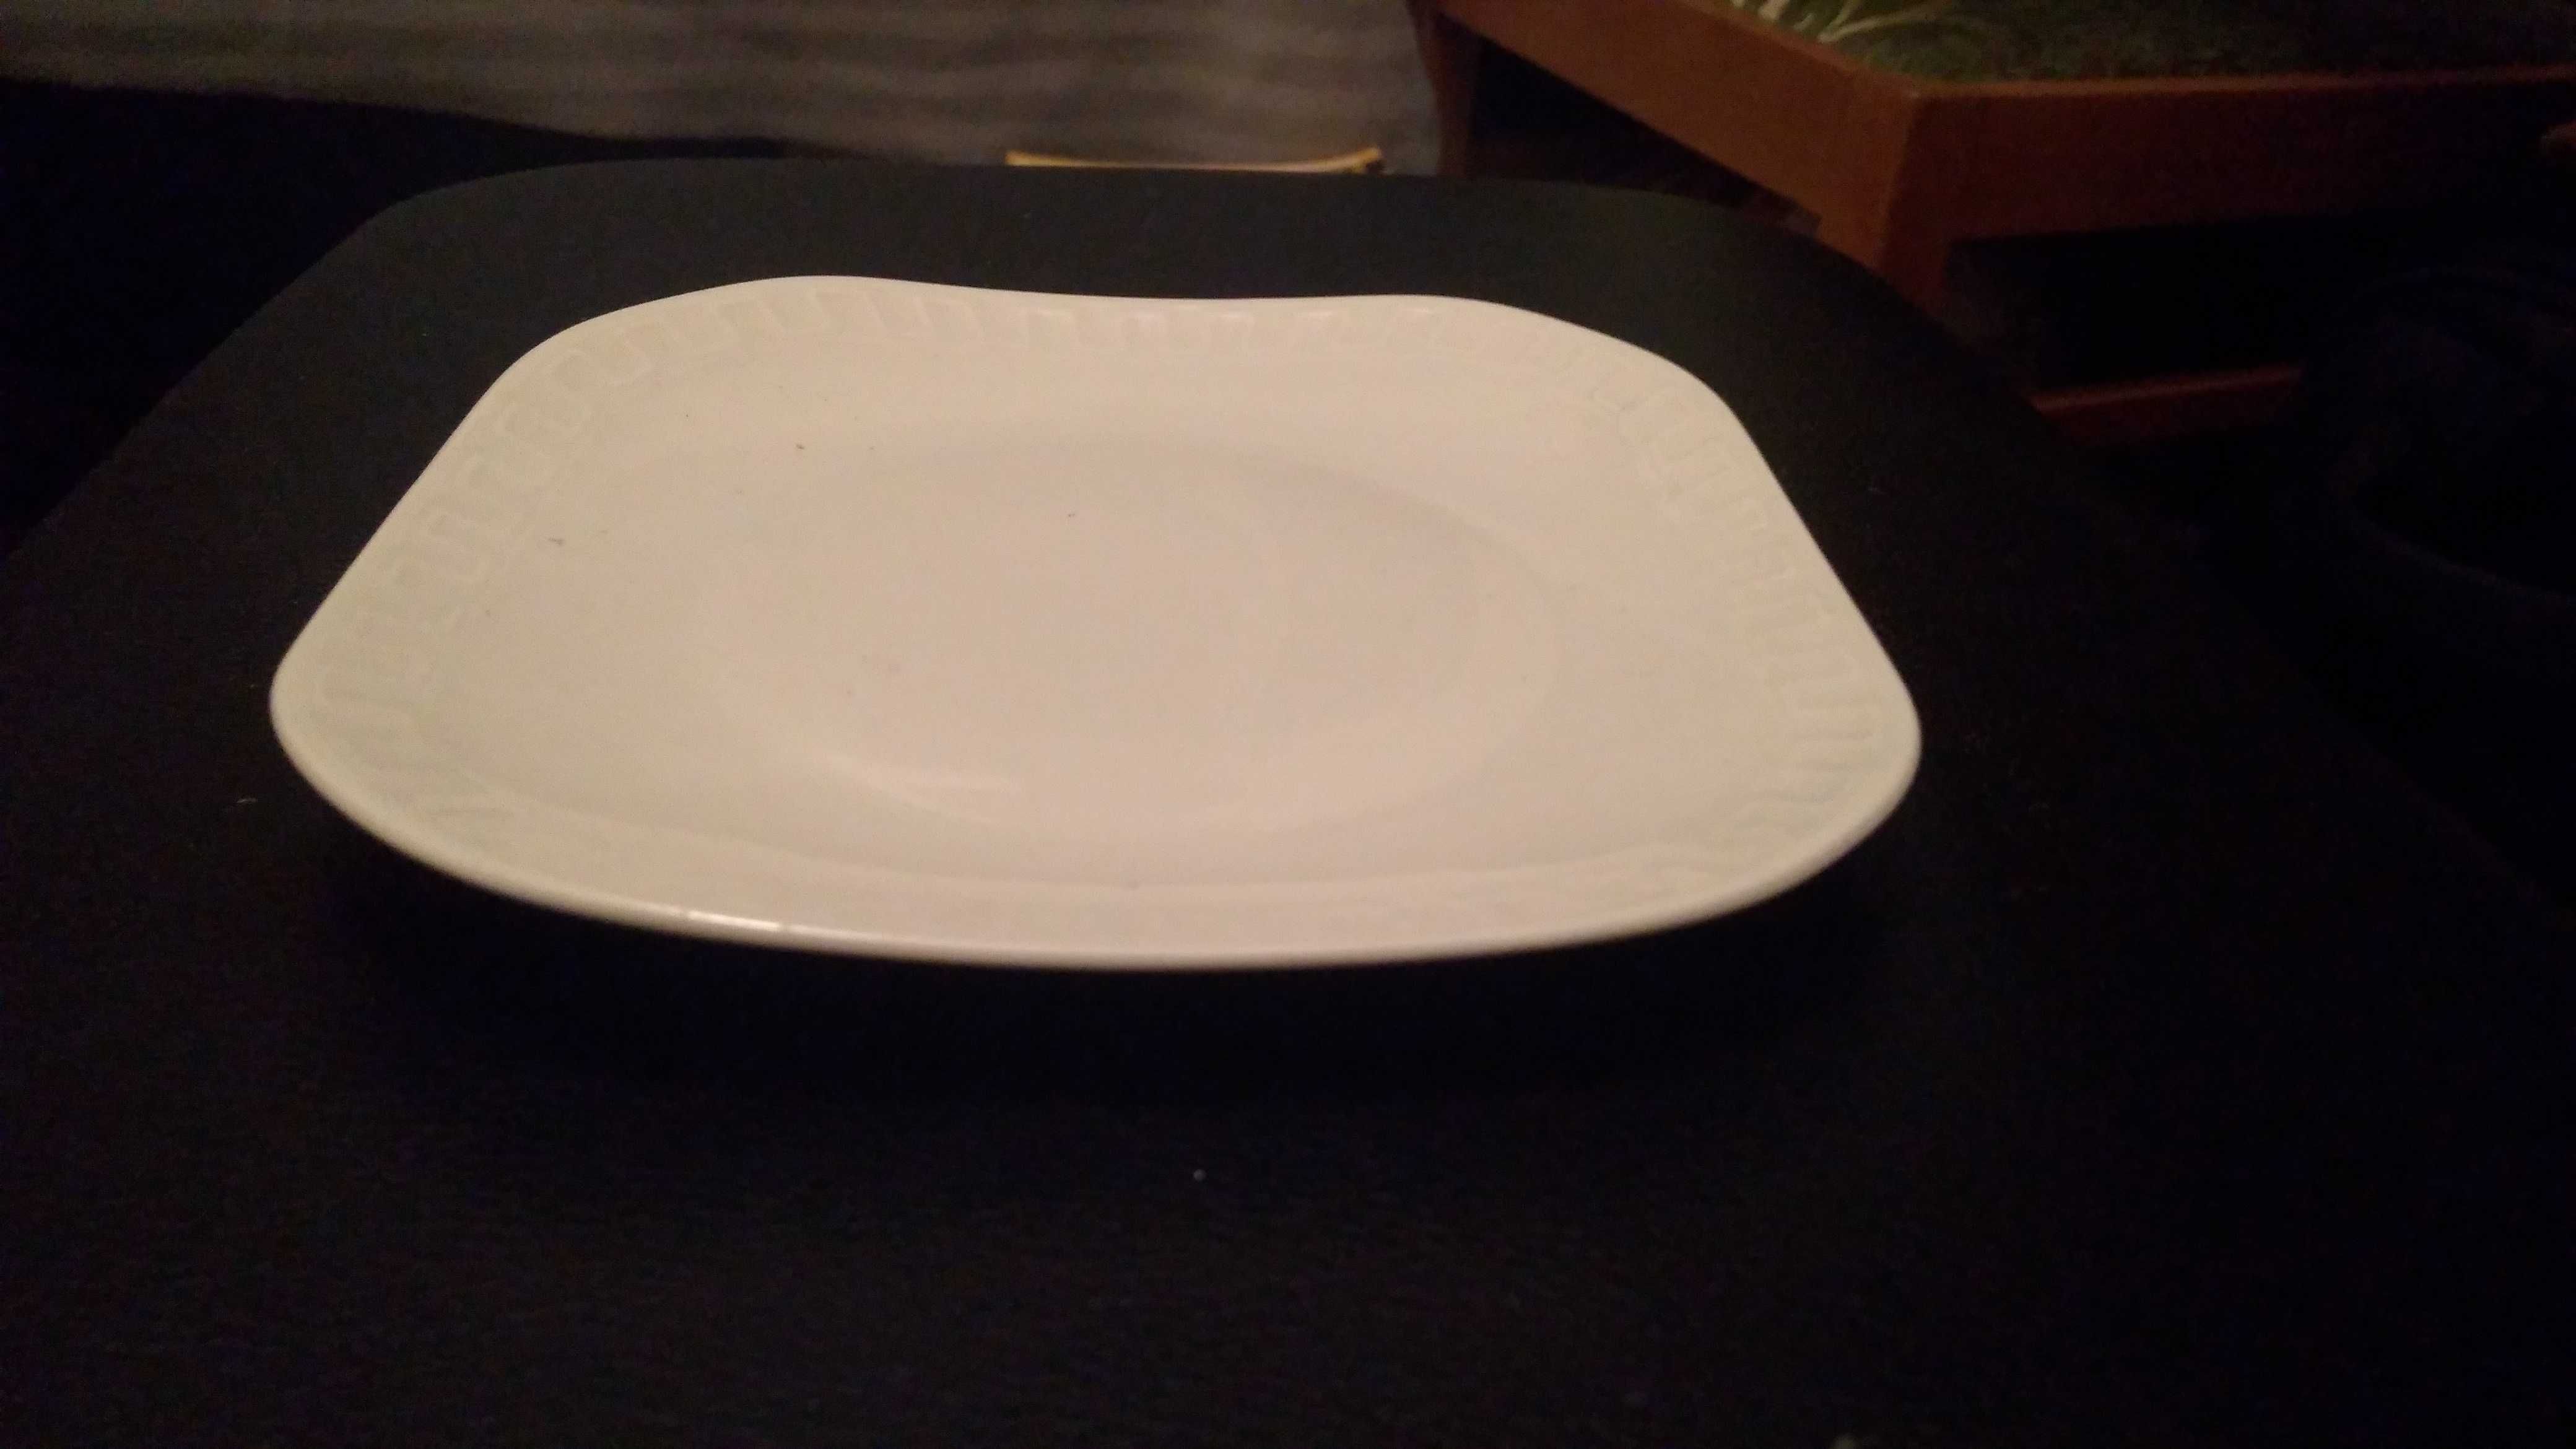 Biały talerz, kwadratowy z wzorkiem przy krawędzi.